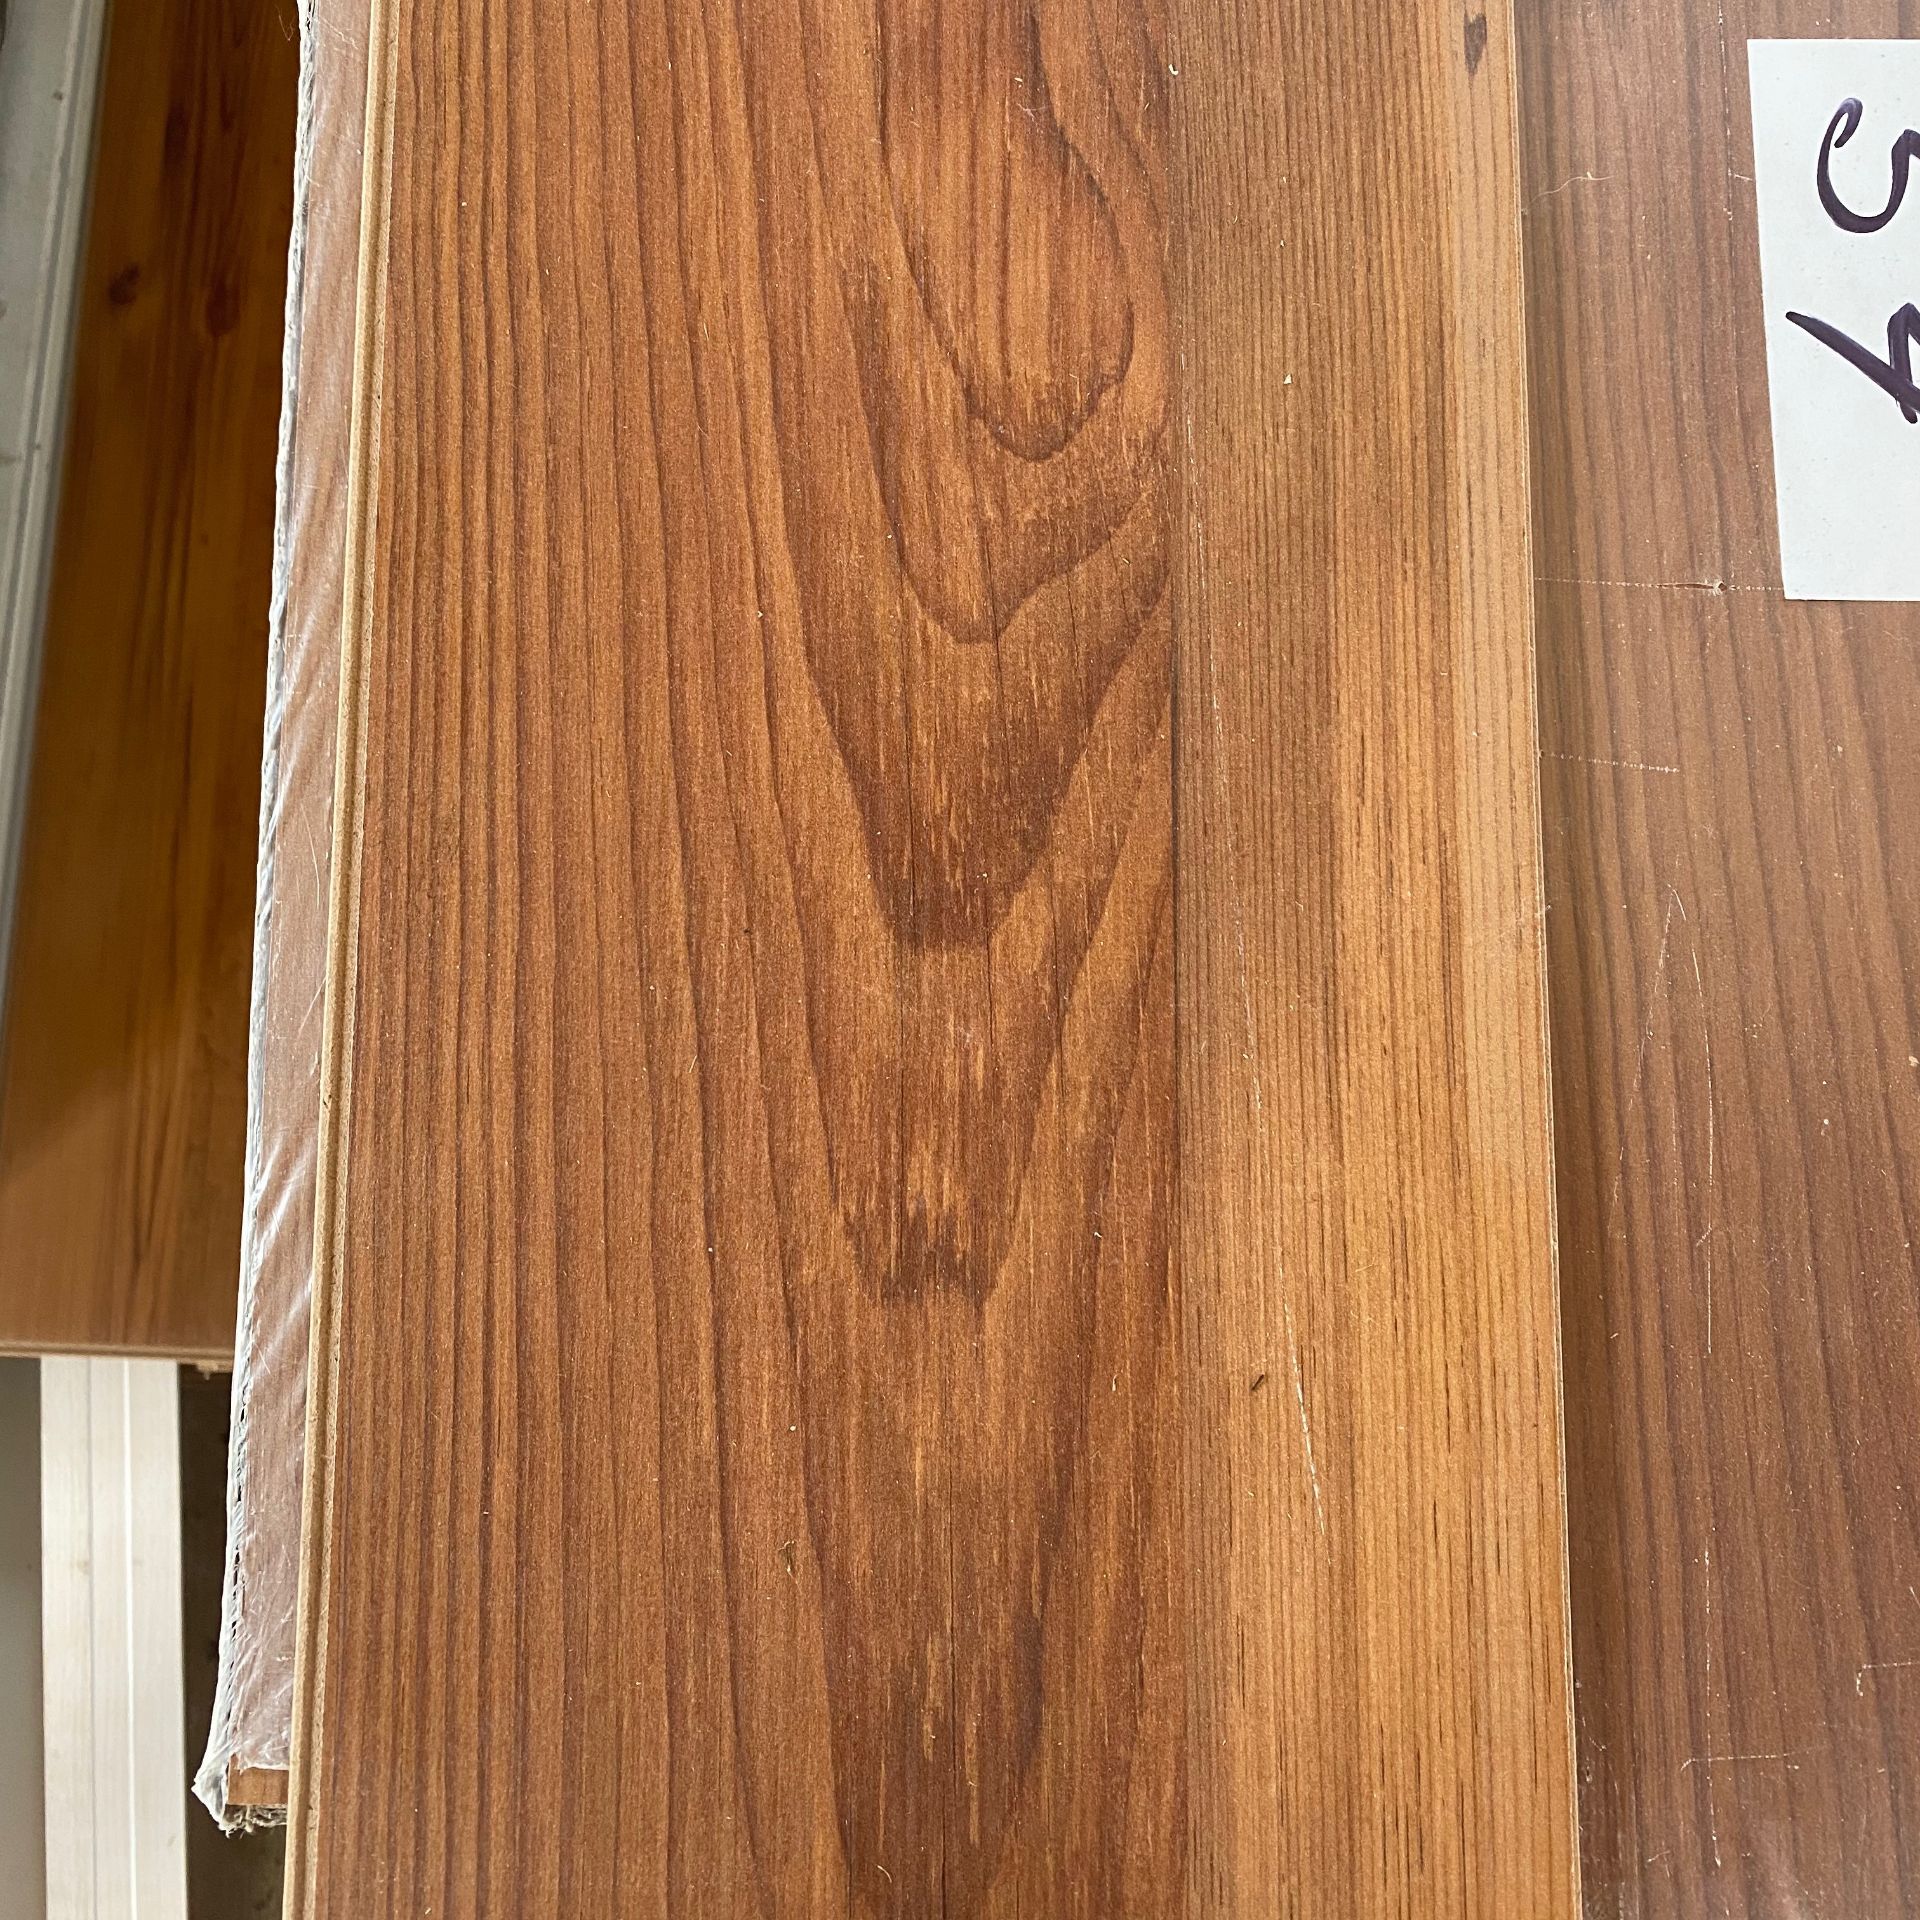 Laminated Hardwood flooring - Image 4 of 5